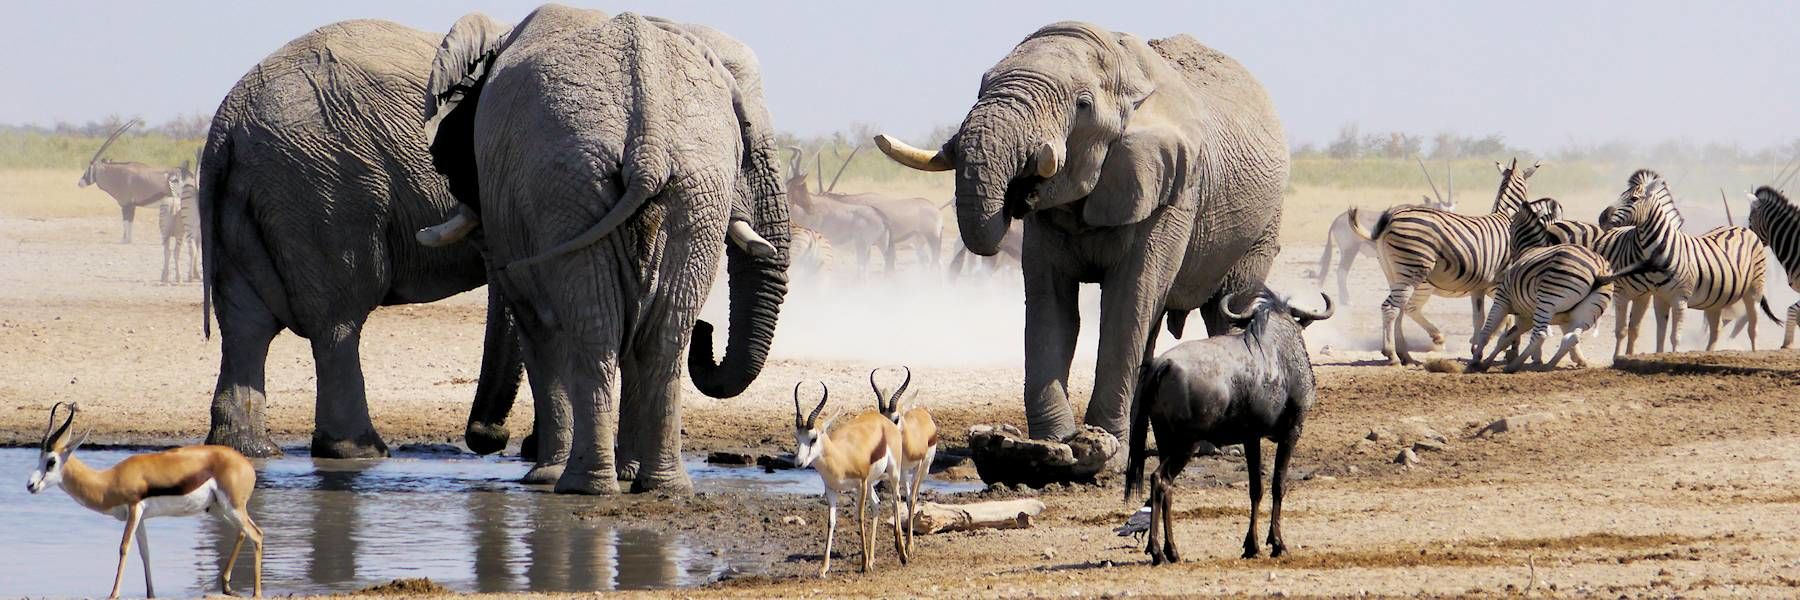 Eléphants au point d'eau dans le Parc d'Etosha